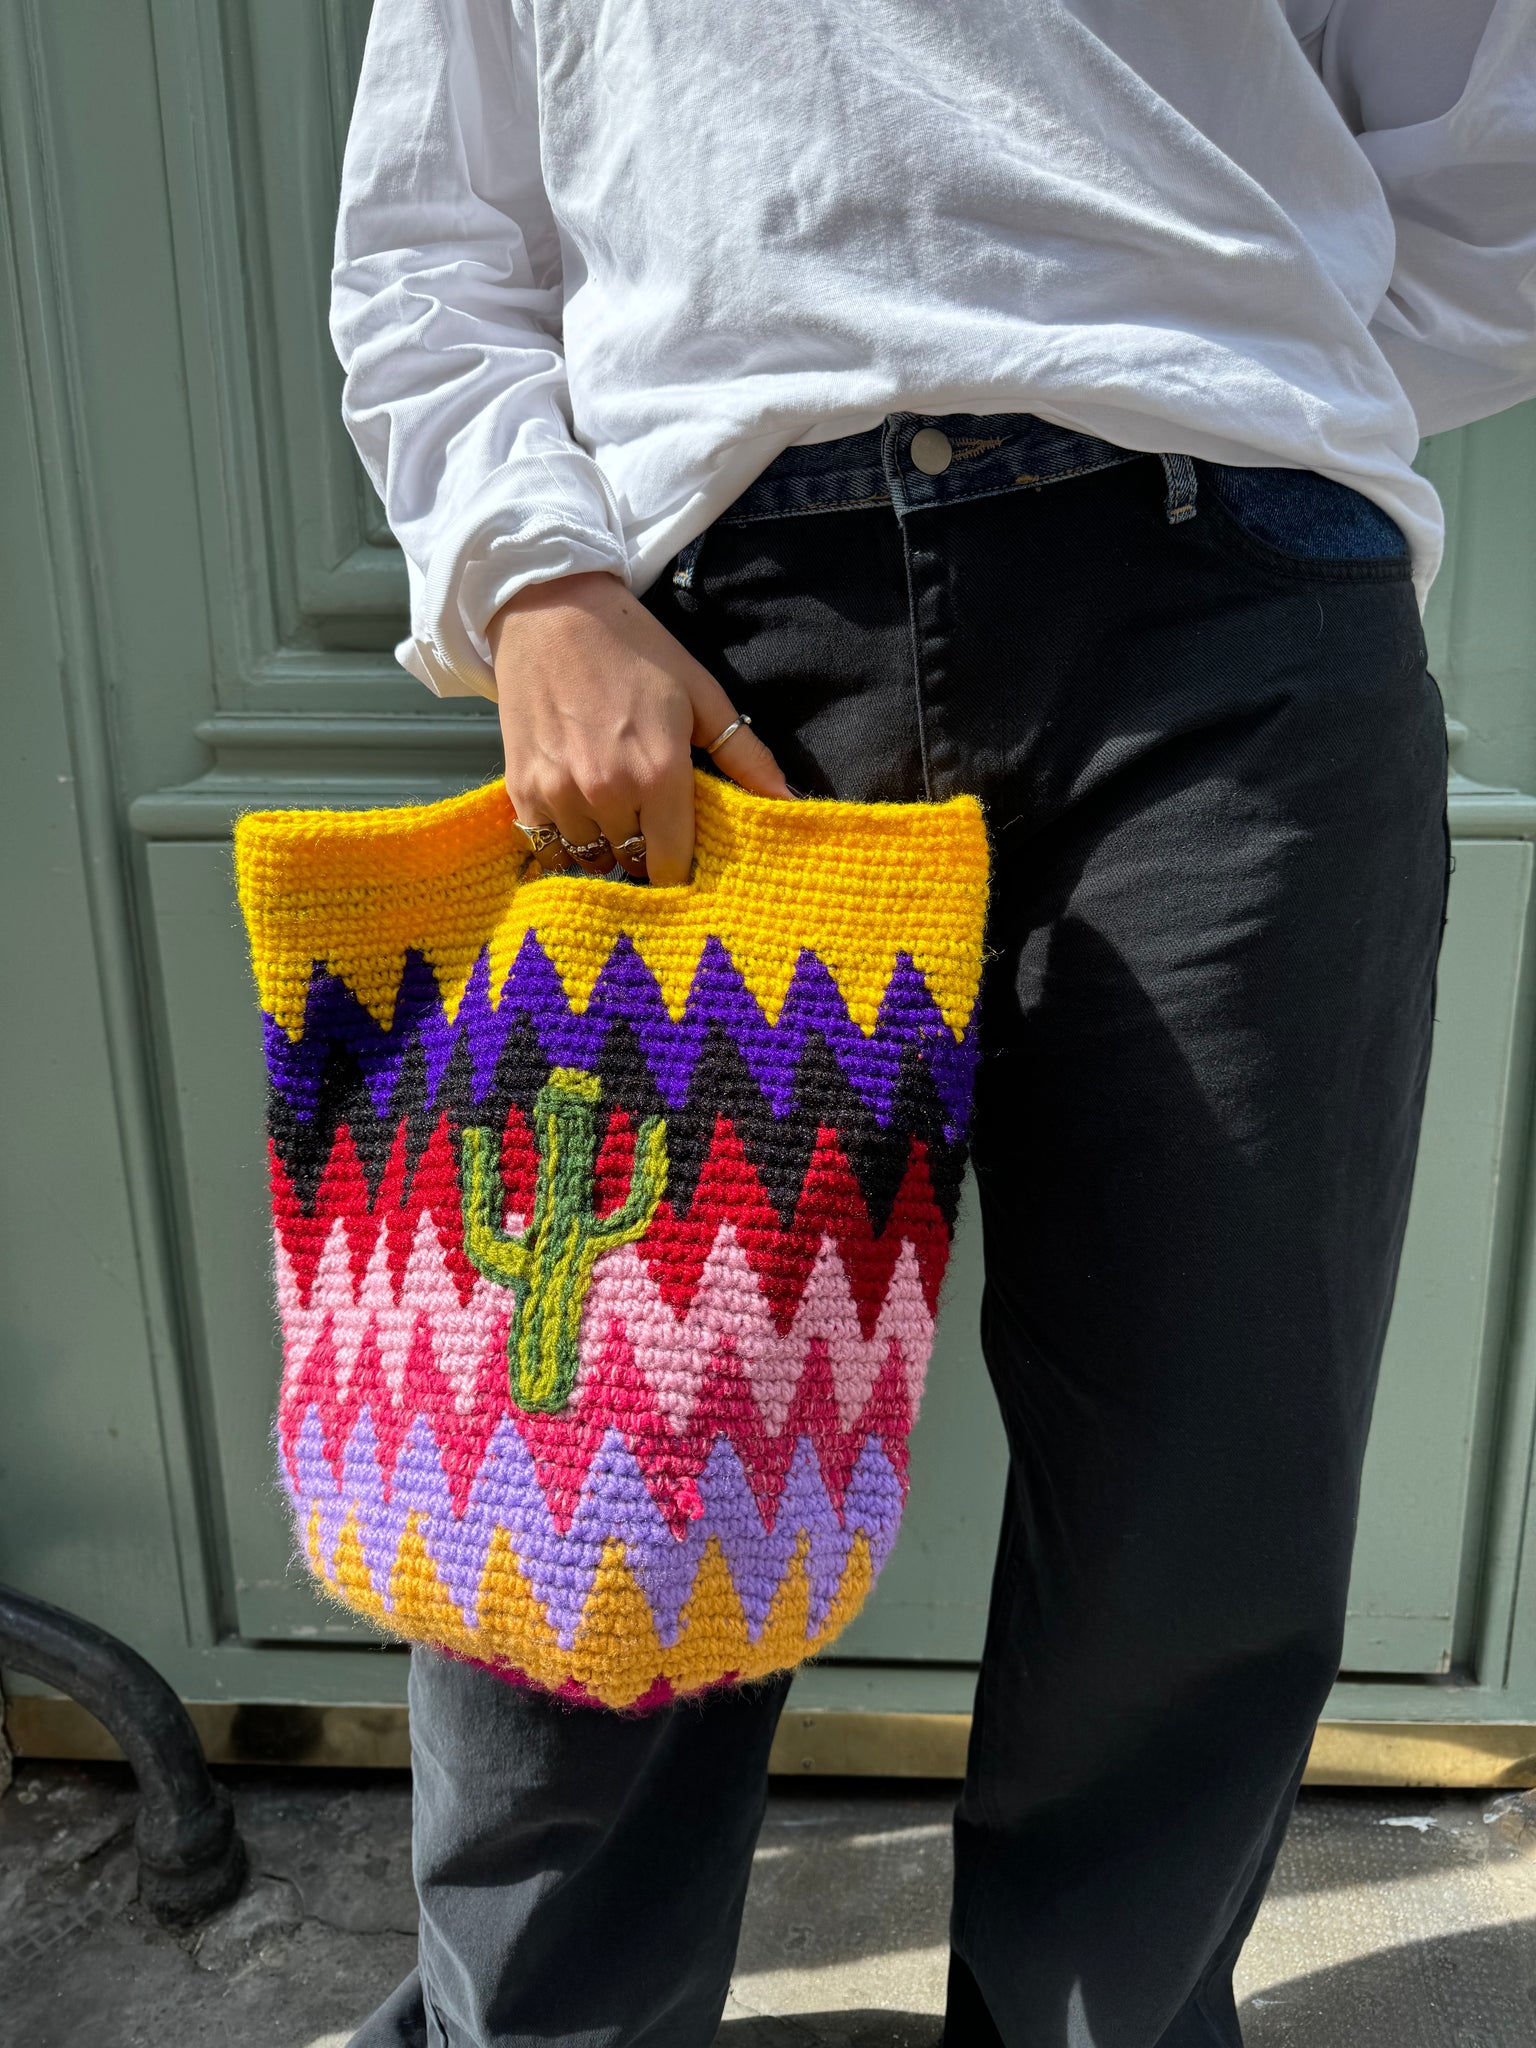 photo de lola portant un sac cactus, sac arborant des couleurs vives et audacieuses